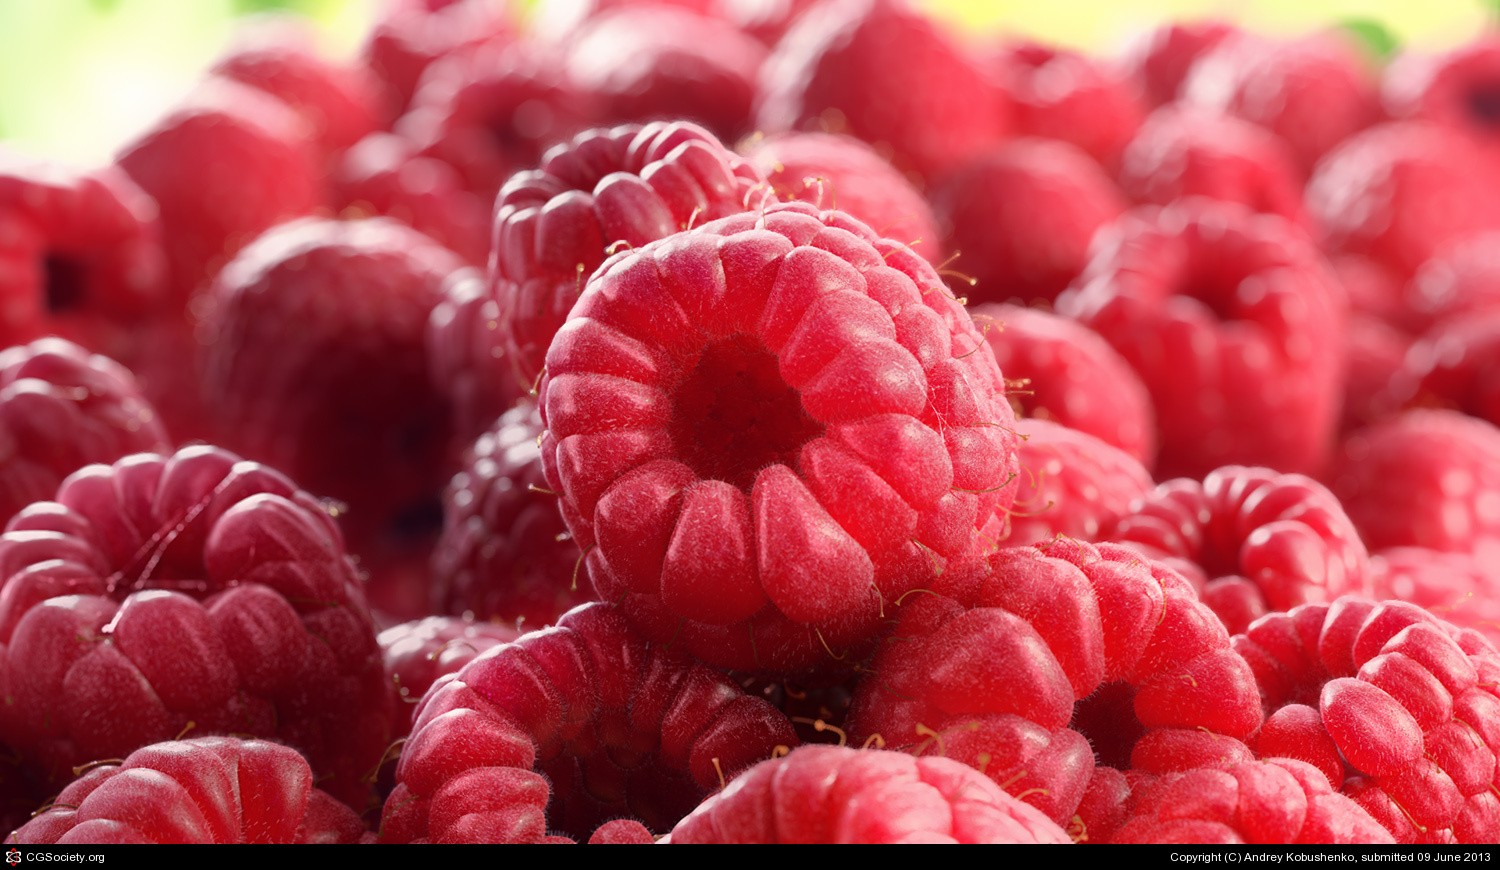 General 1500x870 fruit raspberries bokeh food berries 2013 (Year)